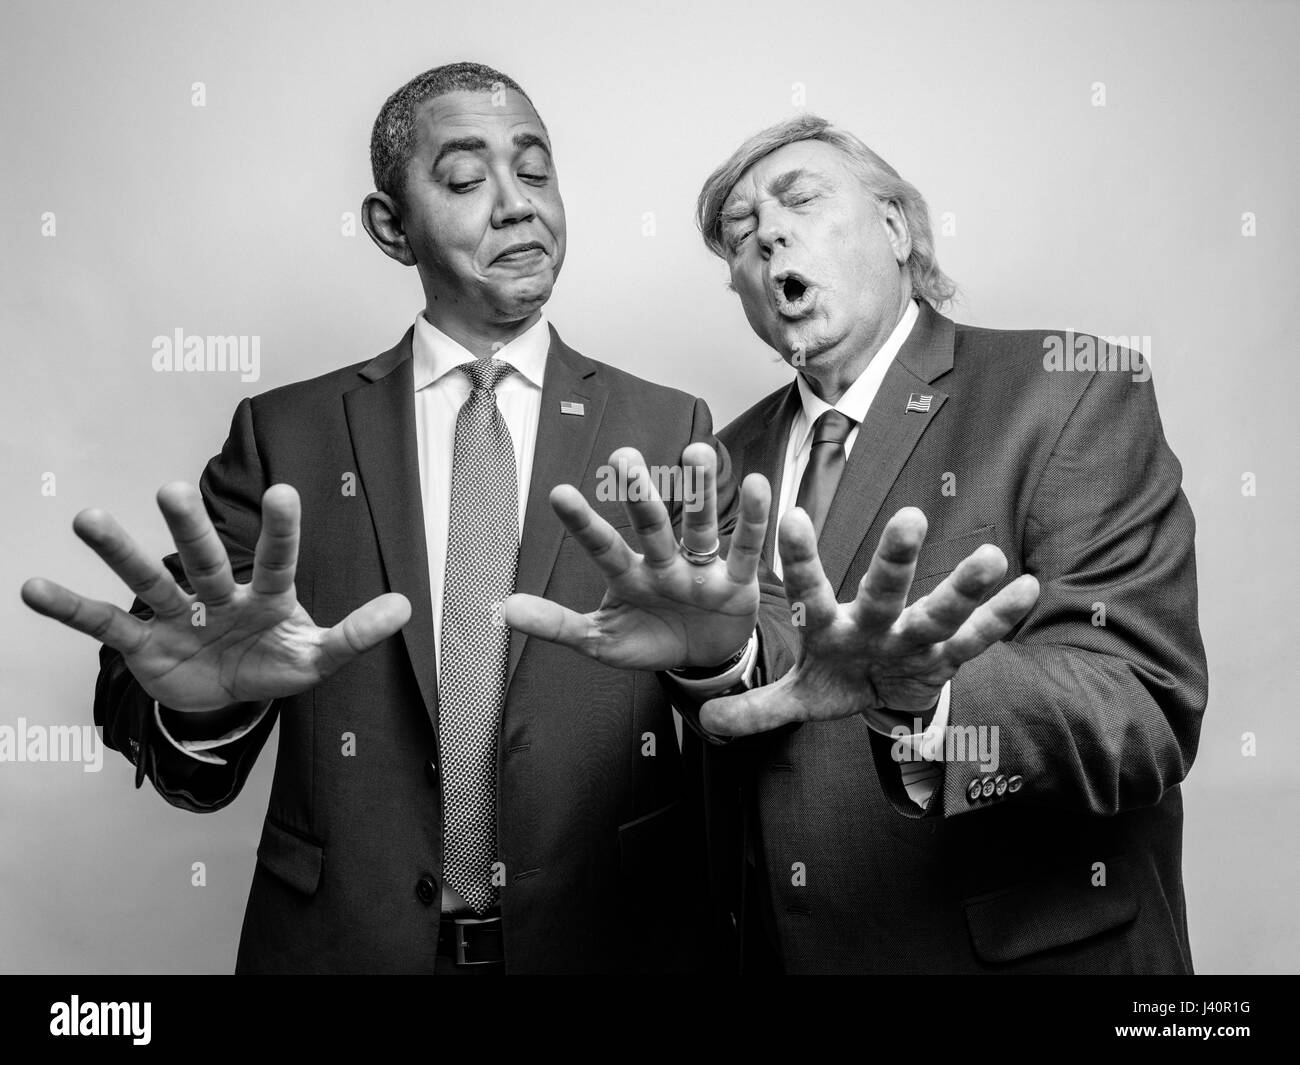 Le président Barack Obama et le Président Donald J. Trump assimilés comparer les tailles de mains pour voir qui a la plus grande main pendant un photoshoot à Hong Kong. Banque D'Images